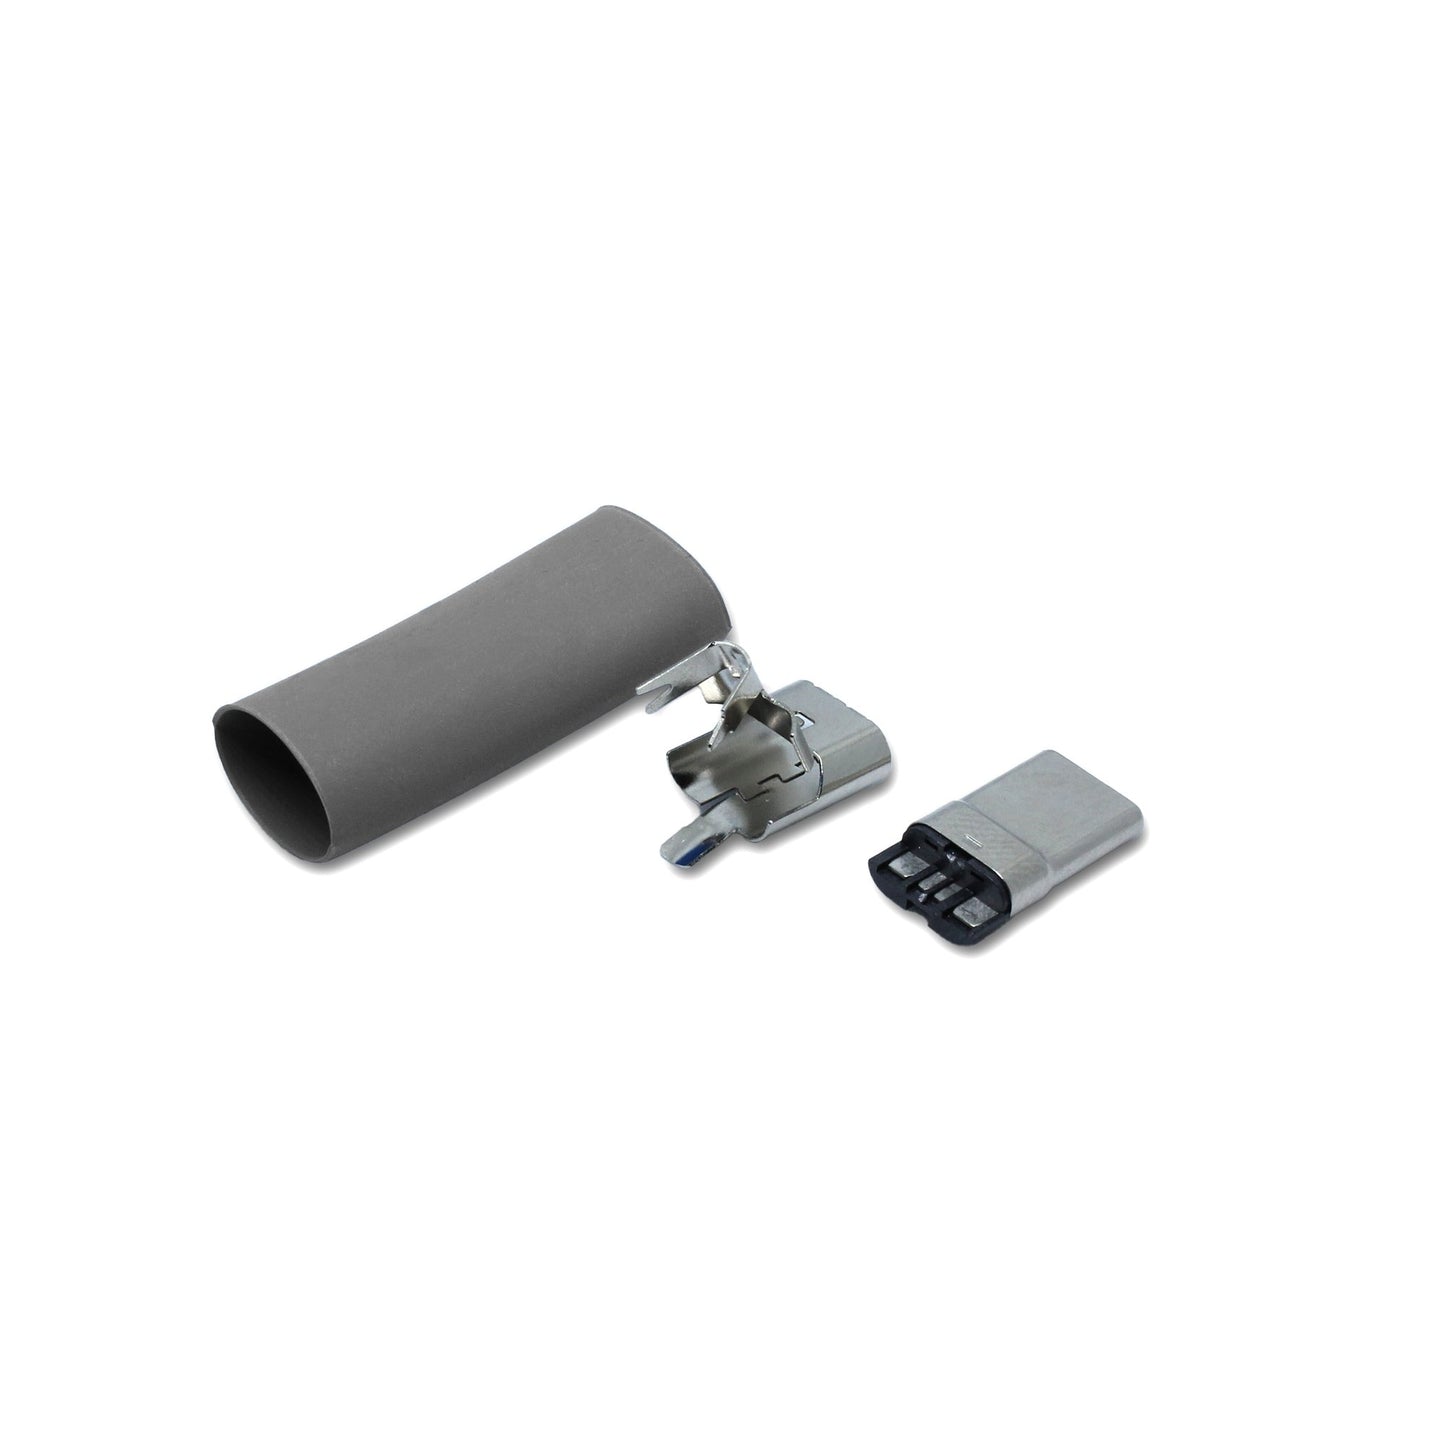 Ein Schrumpfschlauch in grau und Metallteile für den USB C Anschluss